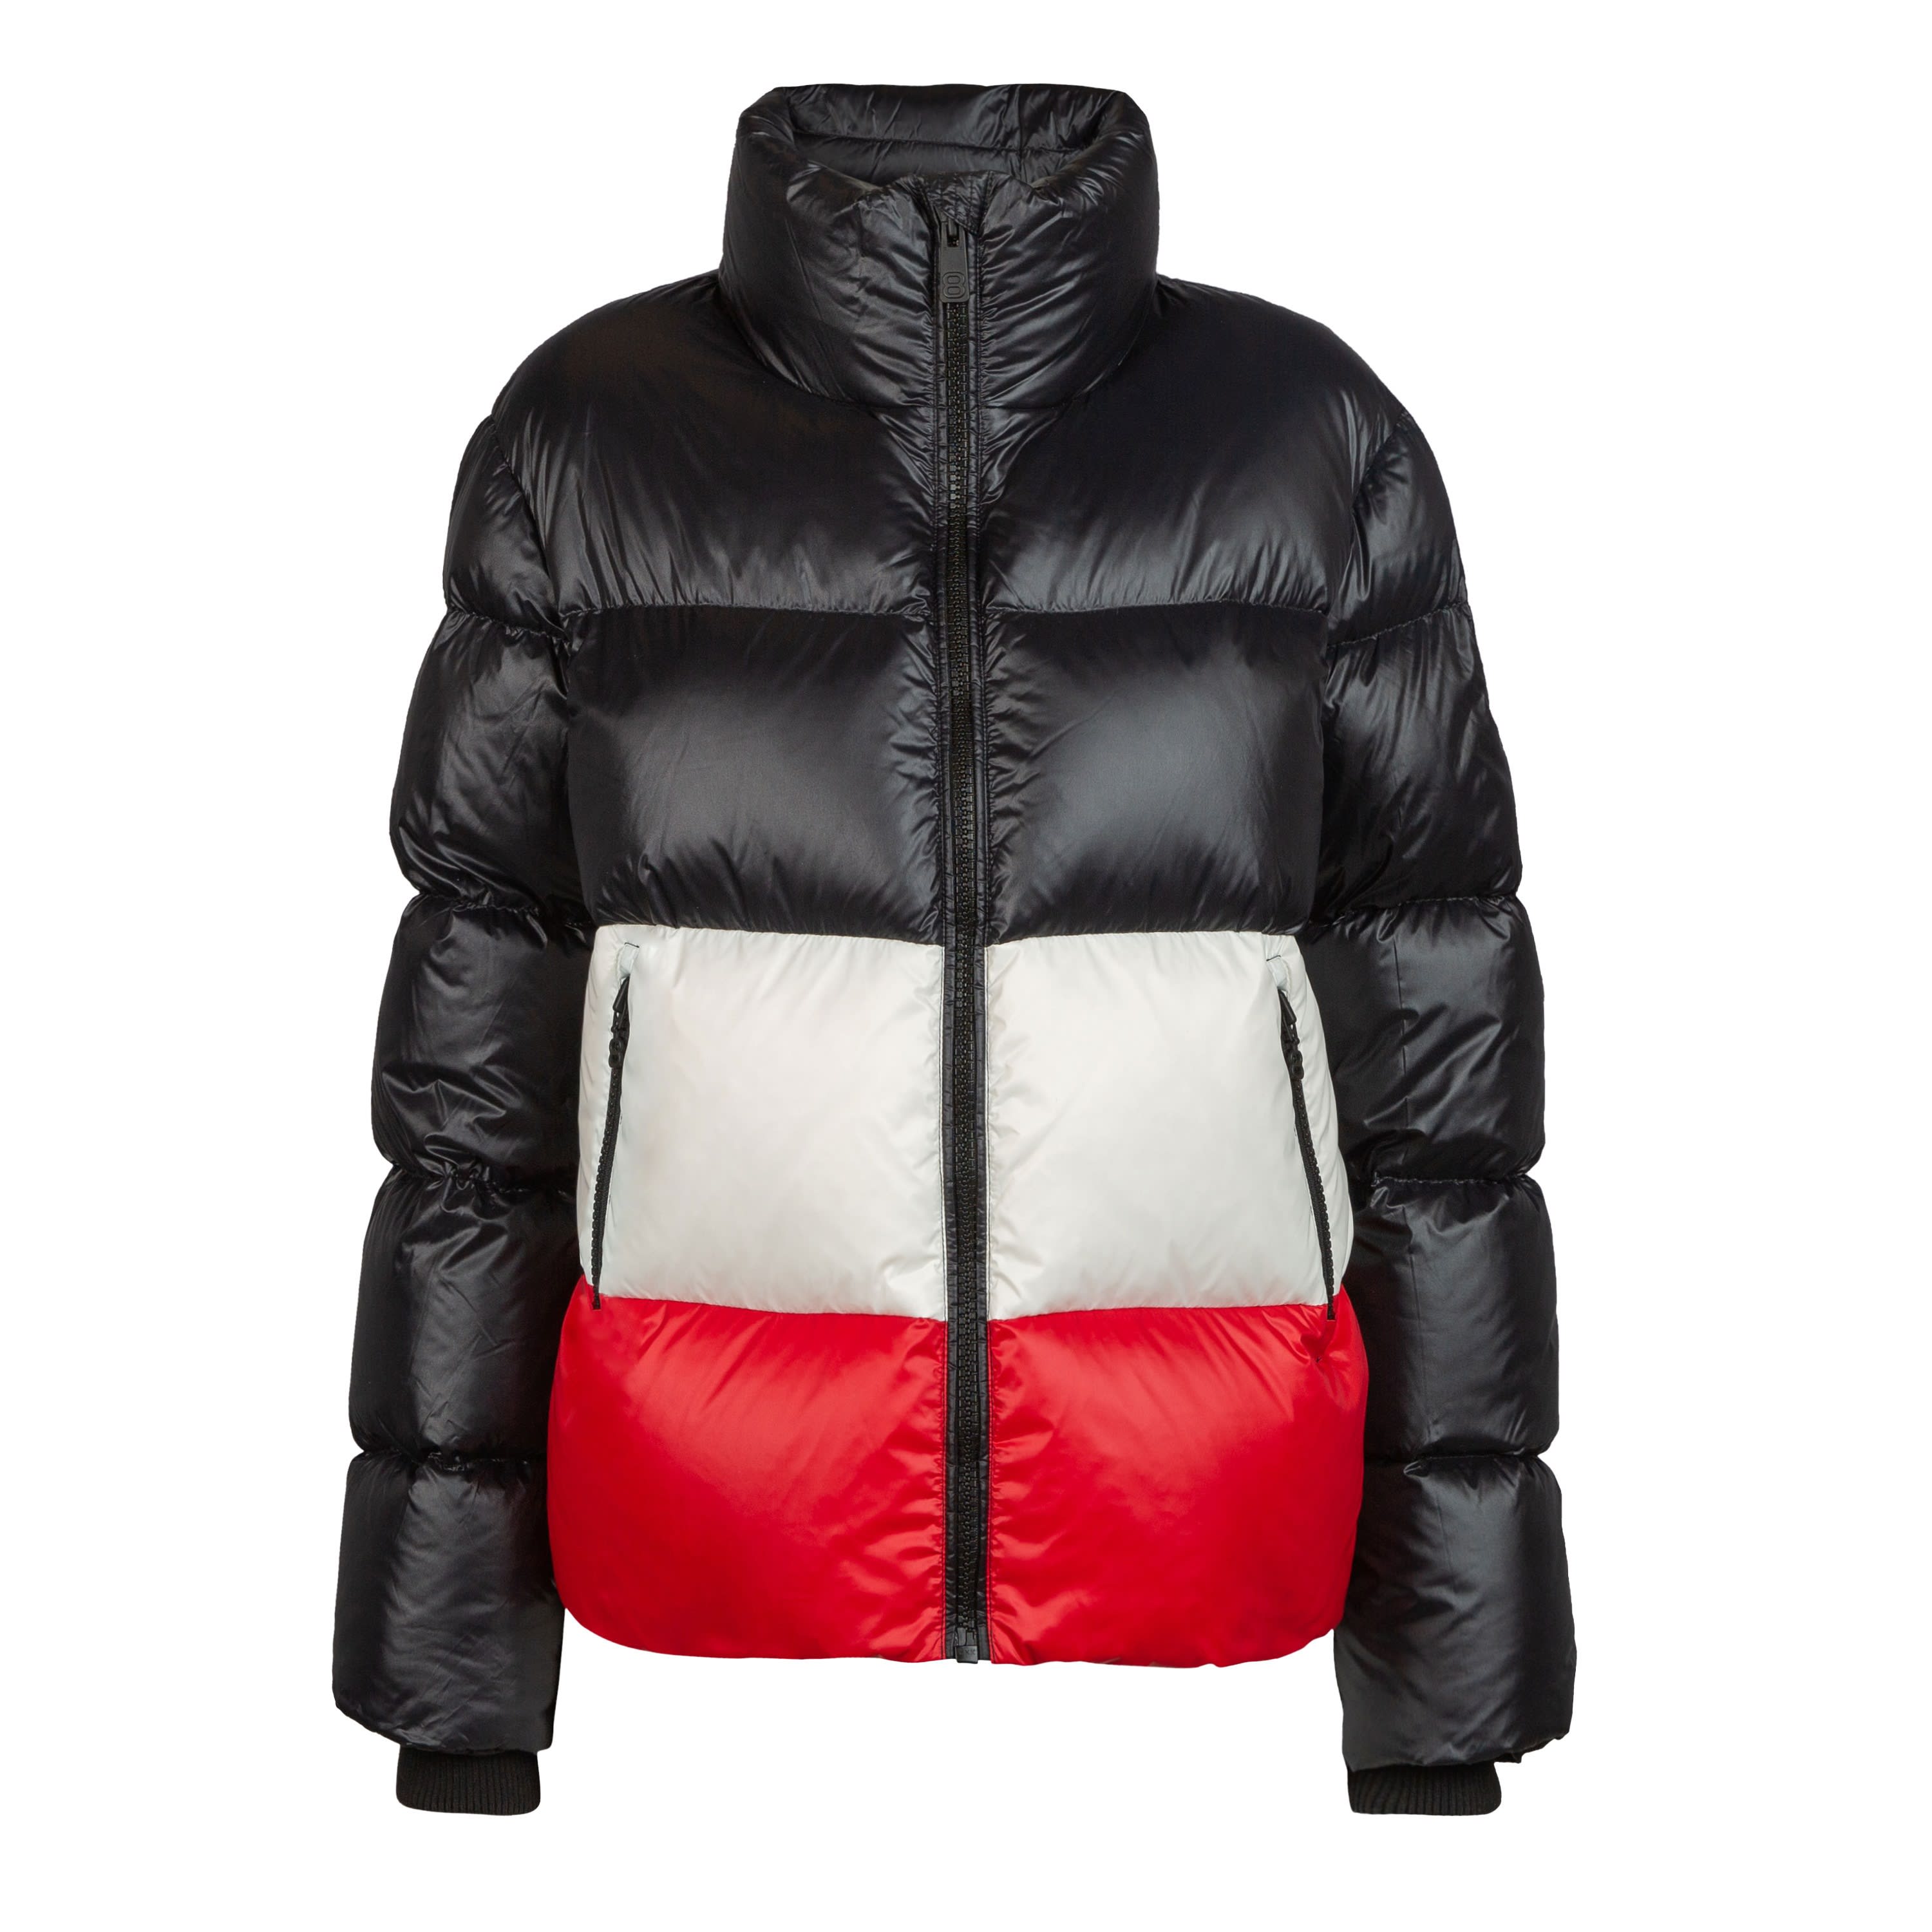 Køb Altitude Women's Mila Jacket fra Outnorth